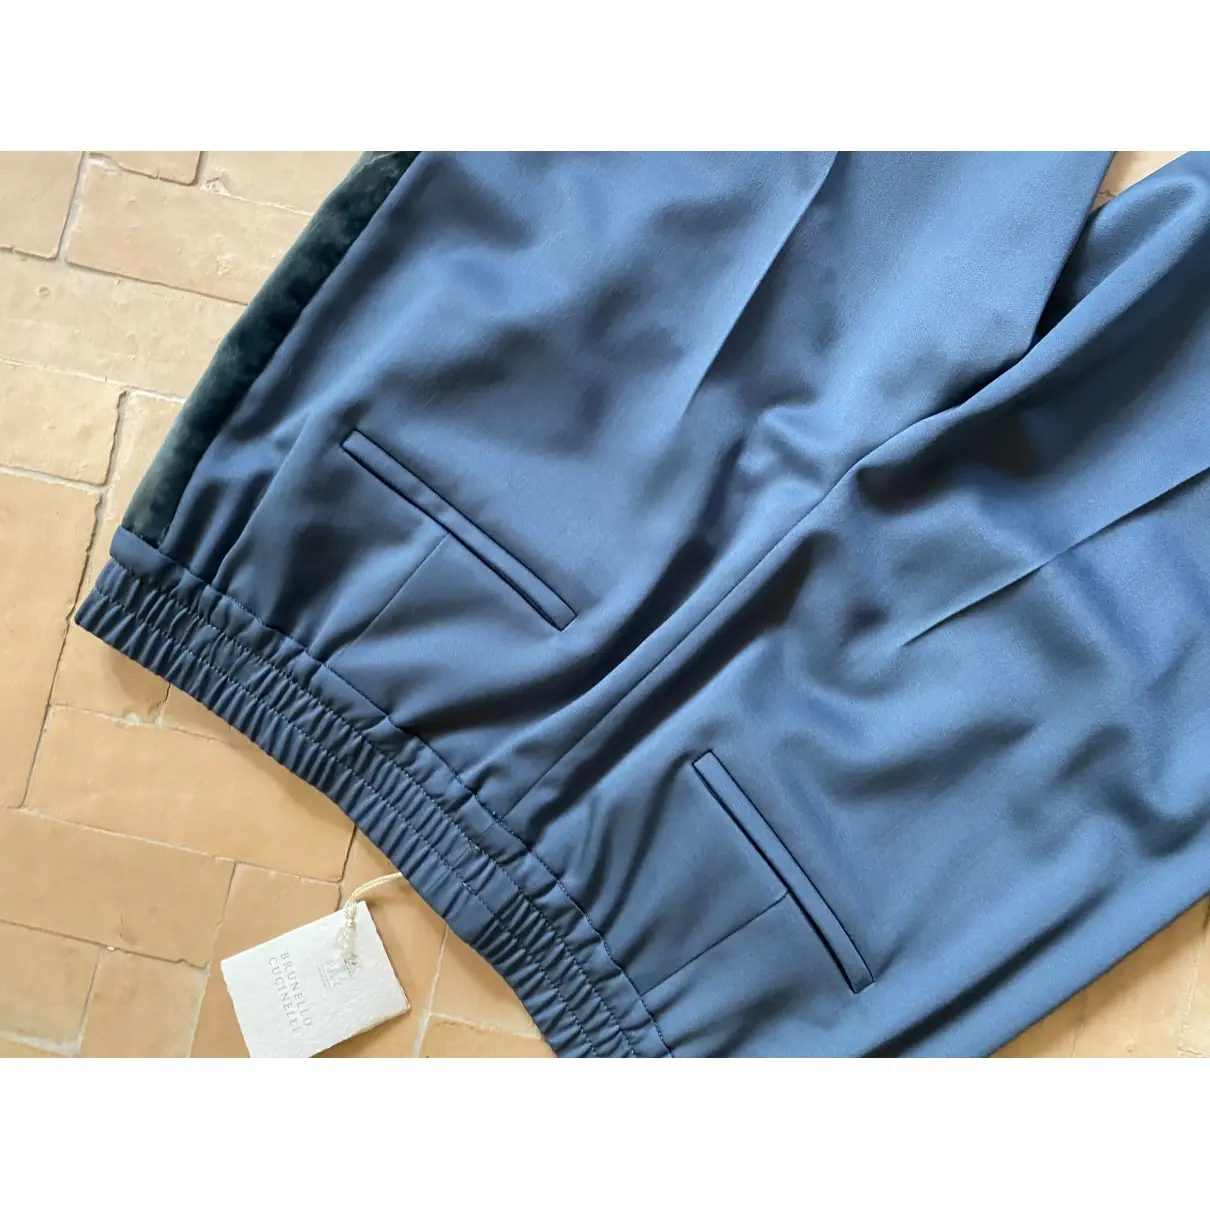 Luxury Brunello Cucinelli Trousers Women